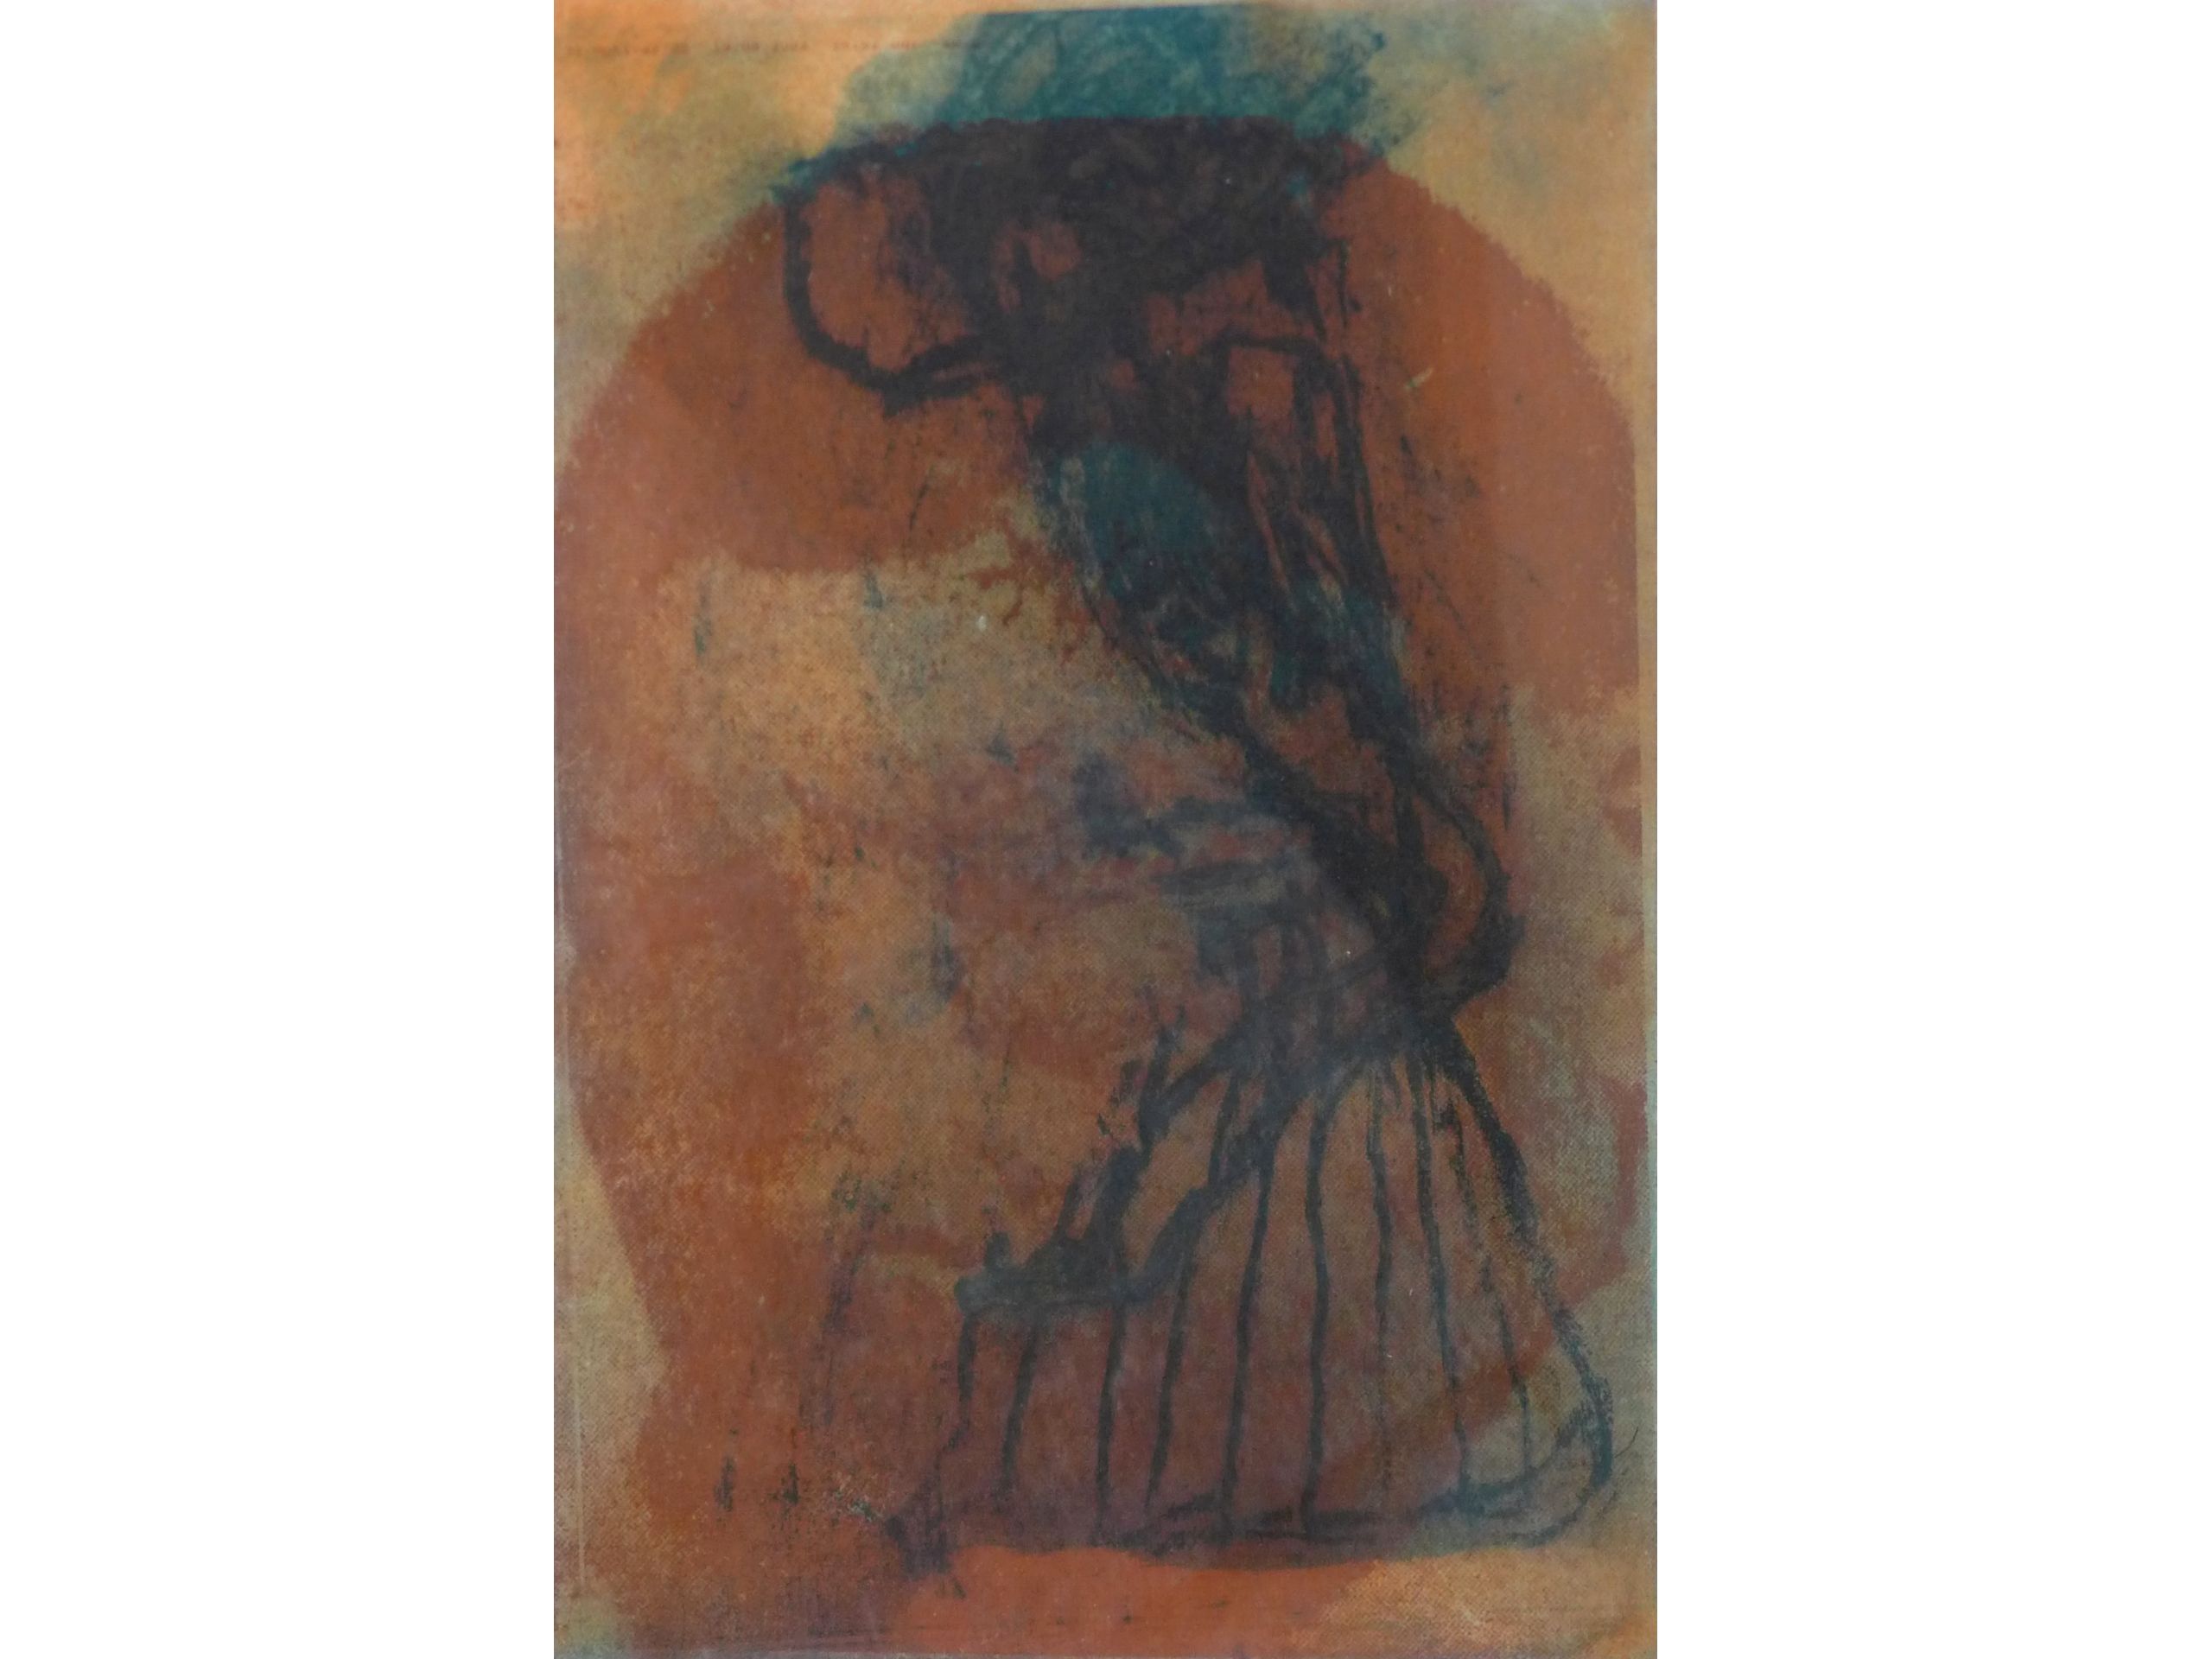 'O.T.' aus der Serie "Shunt", 2003, Farbradierung / Aquatinta, 30 x 20 cm, 120 € 